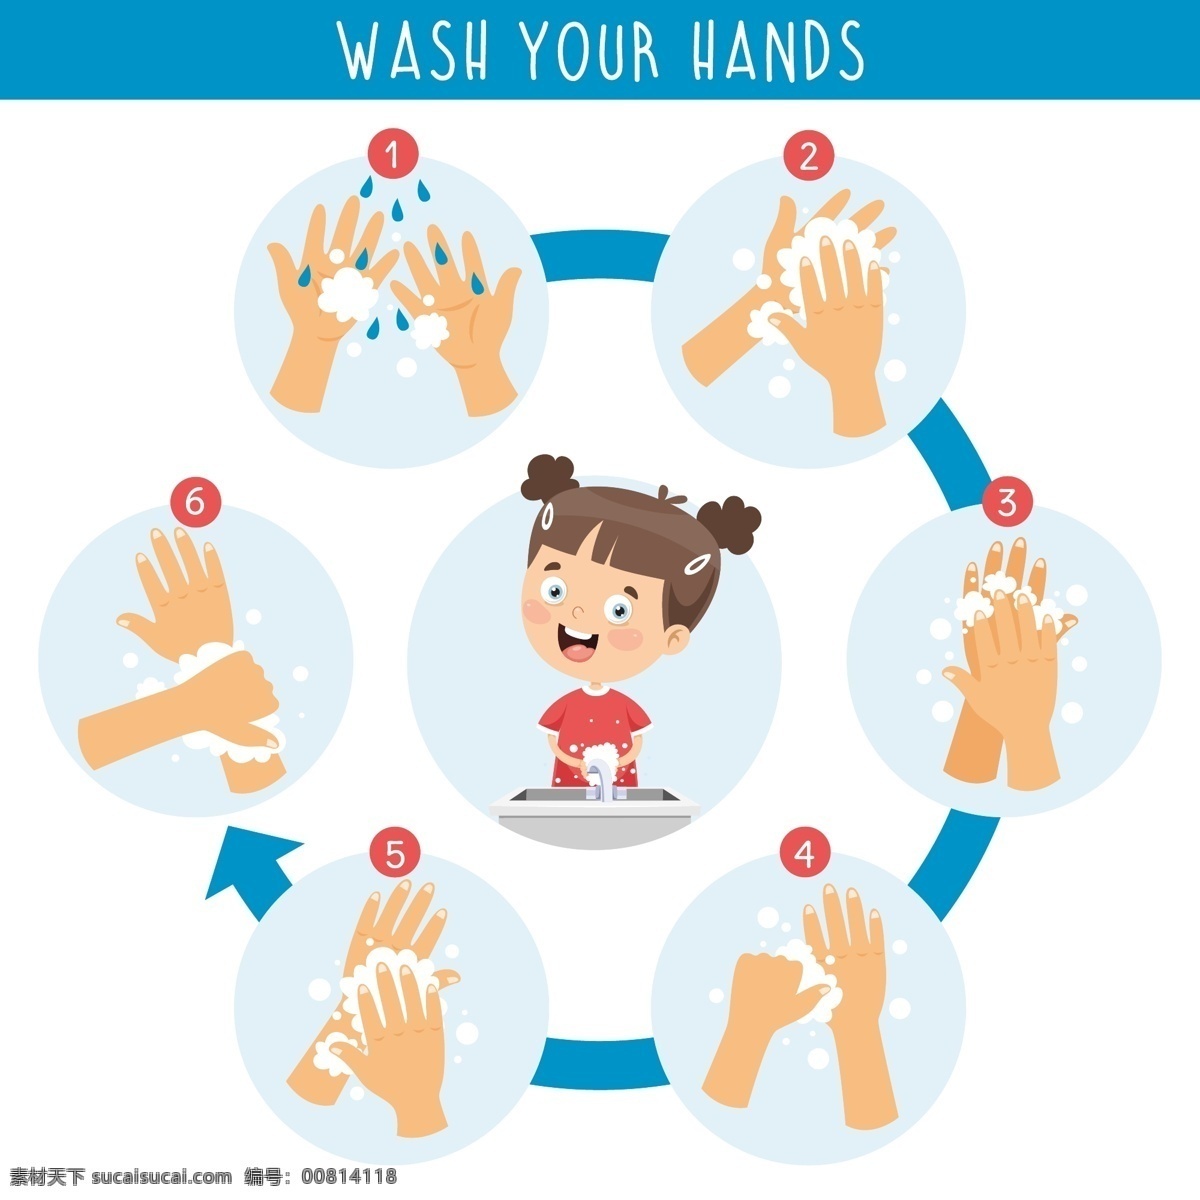 洗手图 儿童 洗手步骤图 七步洗手法 矢量洗手图 矢量素材图 分层